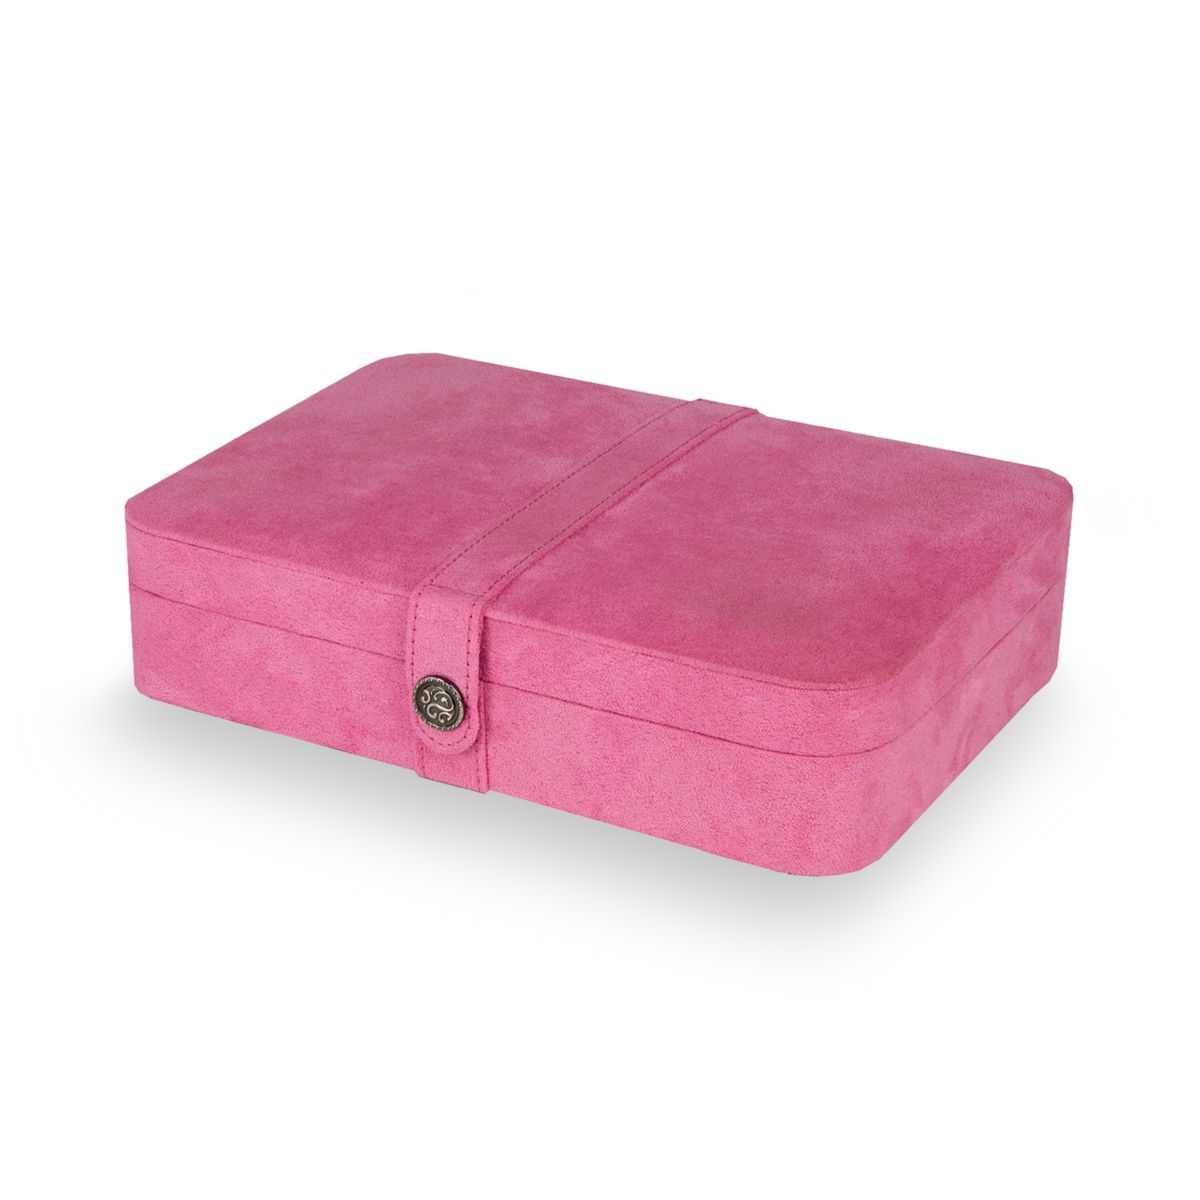 Шкатулка для украшений из плюшевой ткани Mele & Co. Tatum розового цвета Unbranded